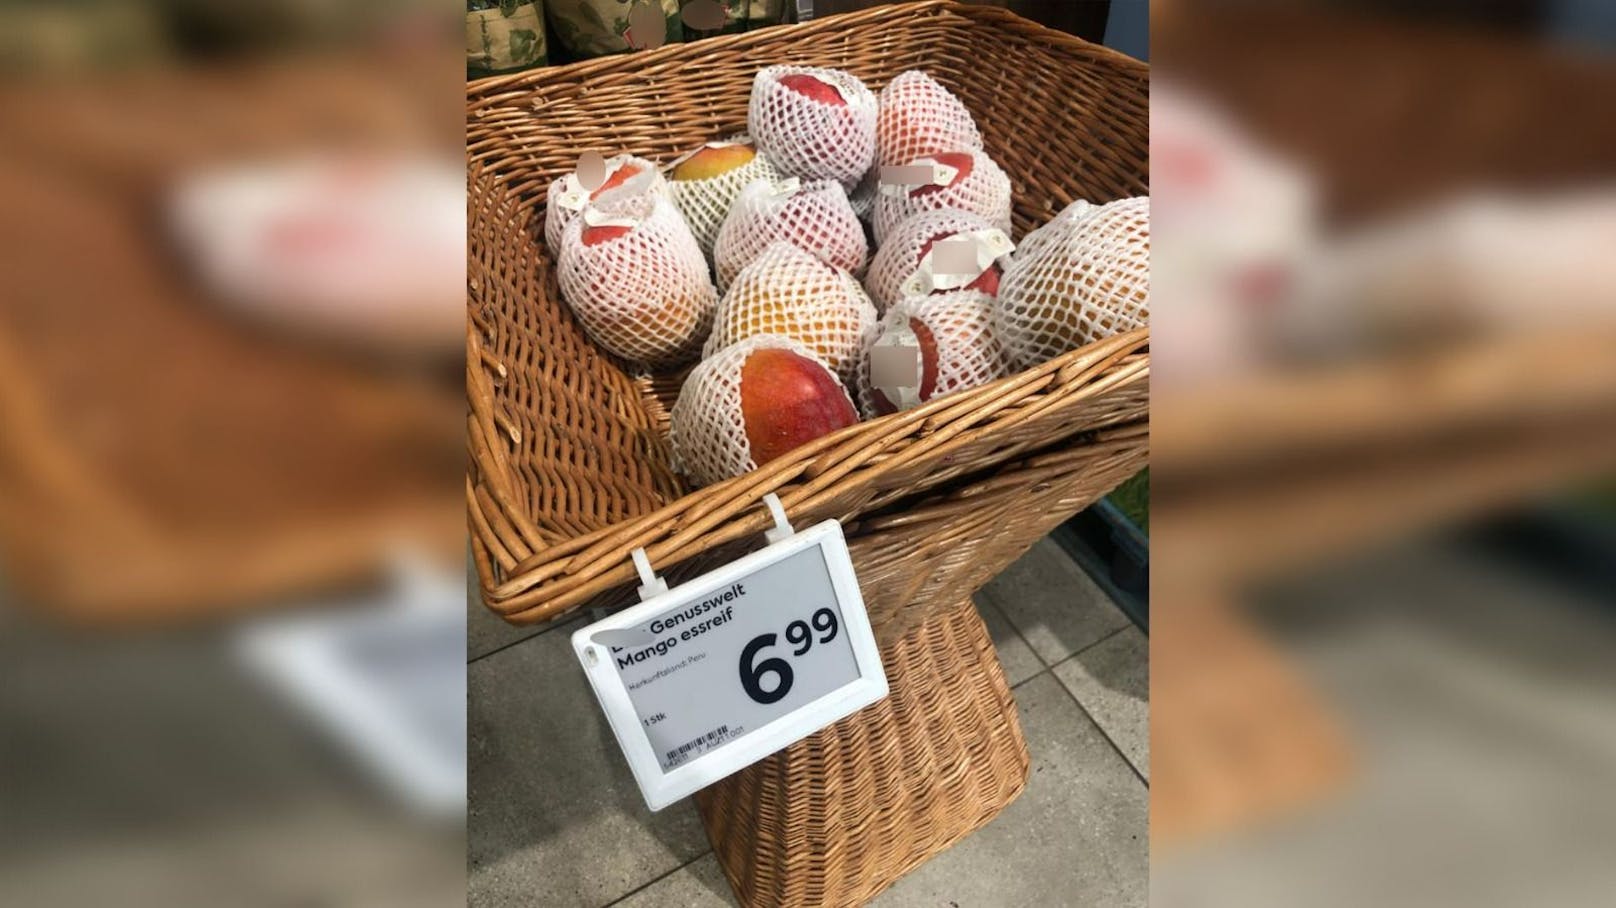 Wucher? Wiener Supermarkt verlangt 7 Euro für 1 Mango